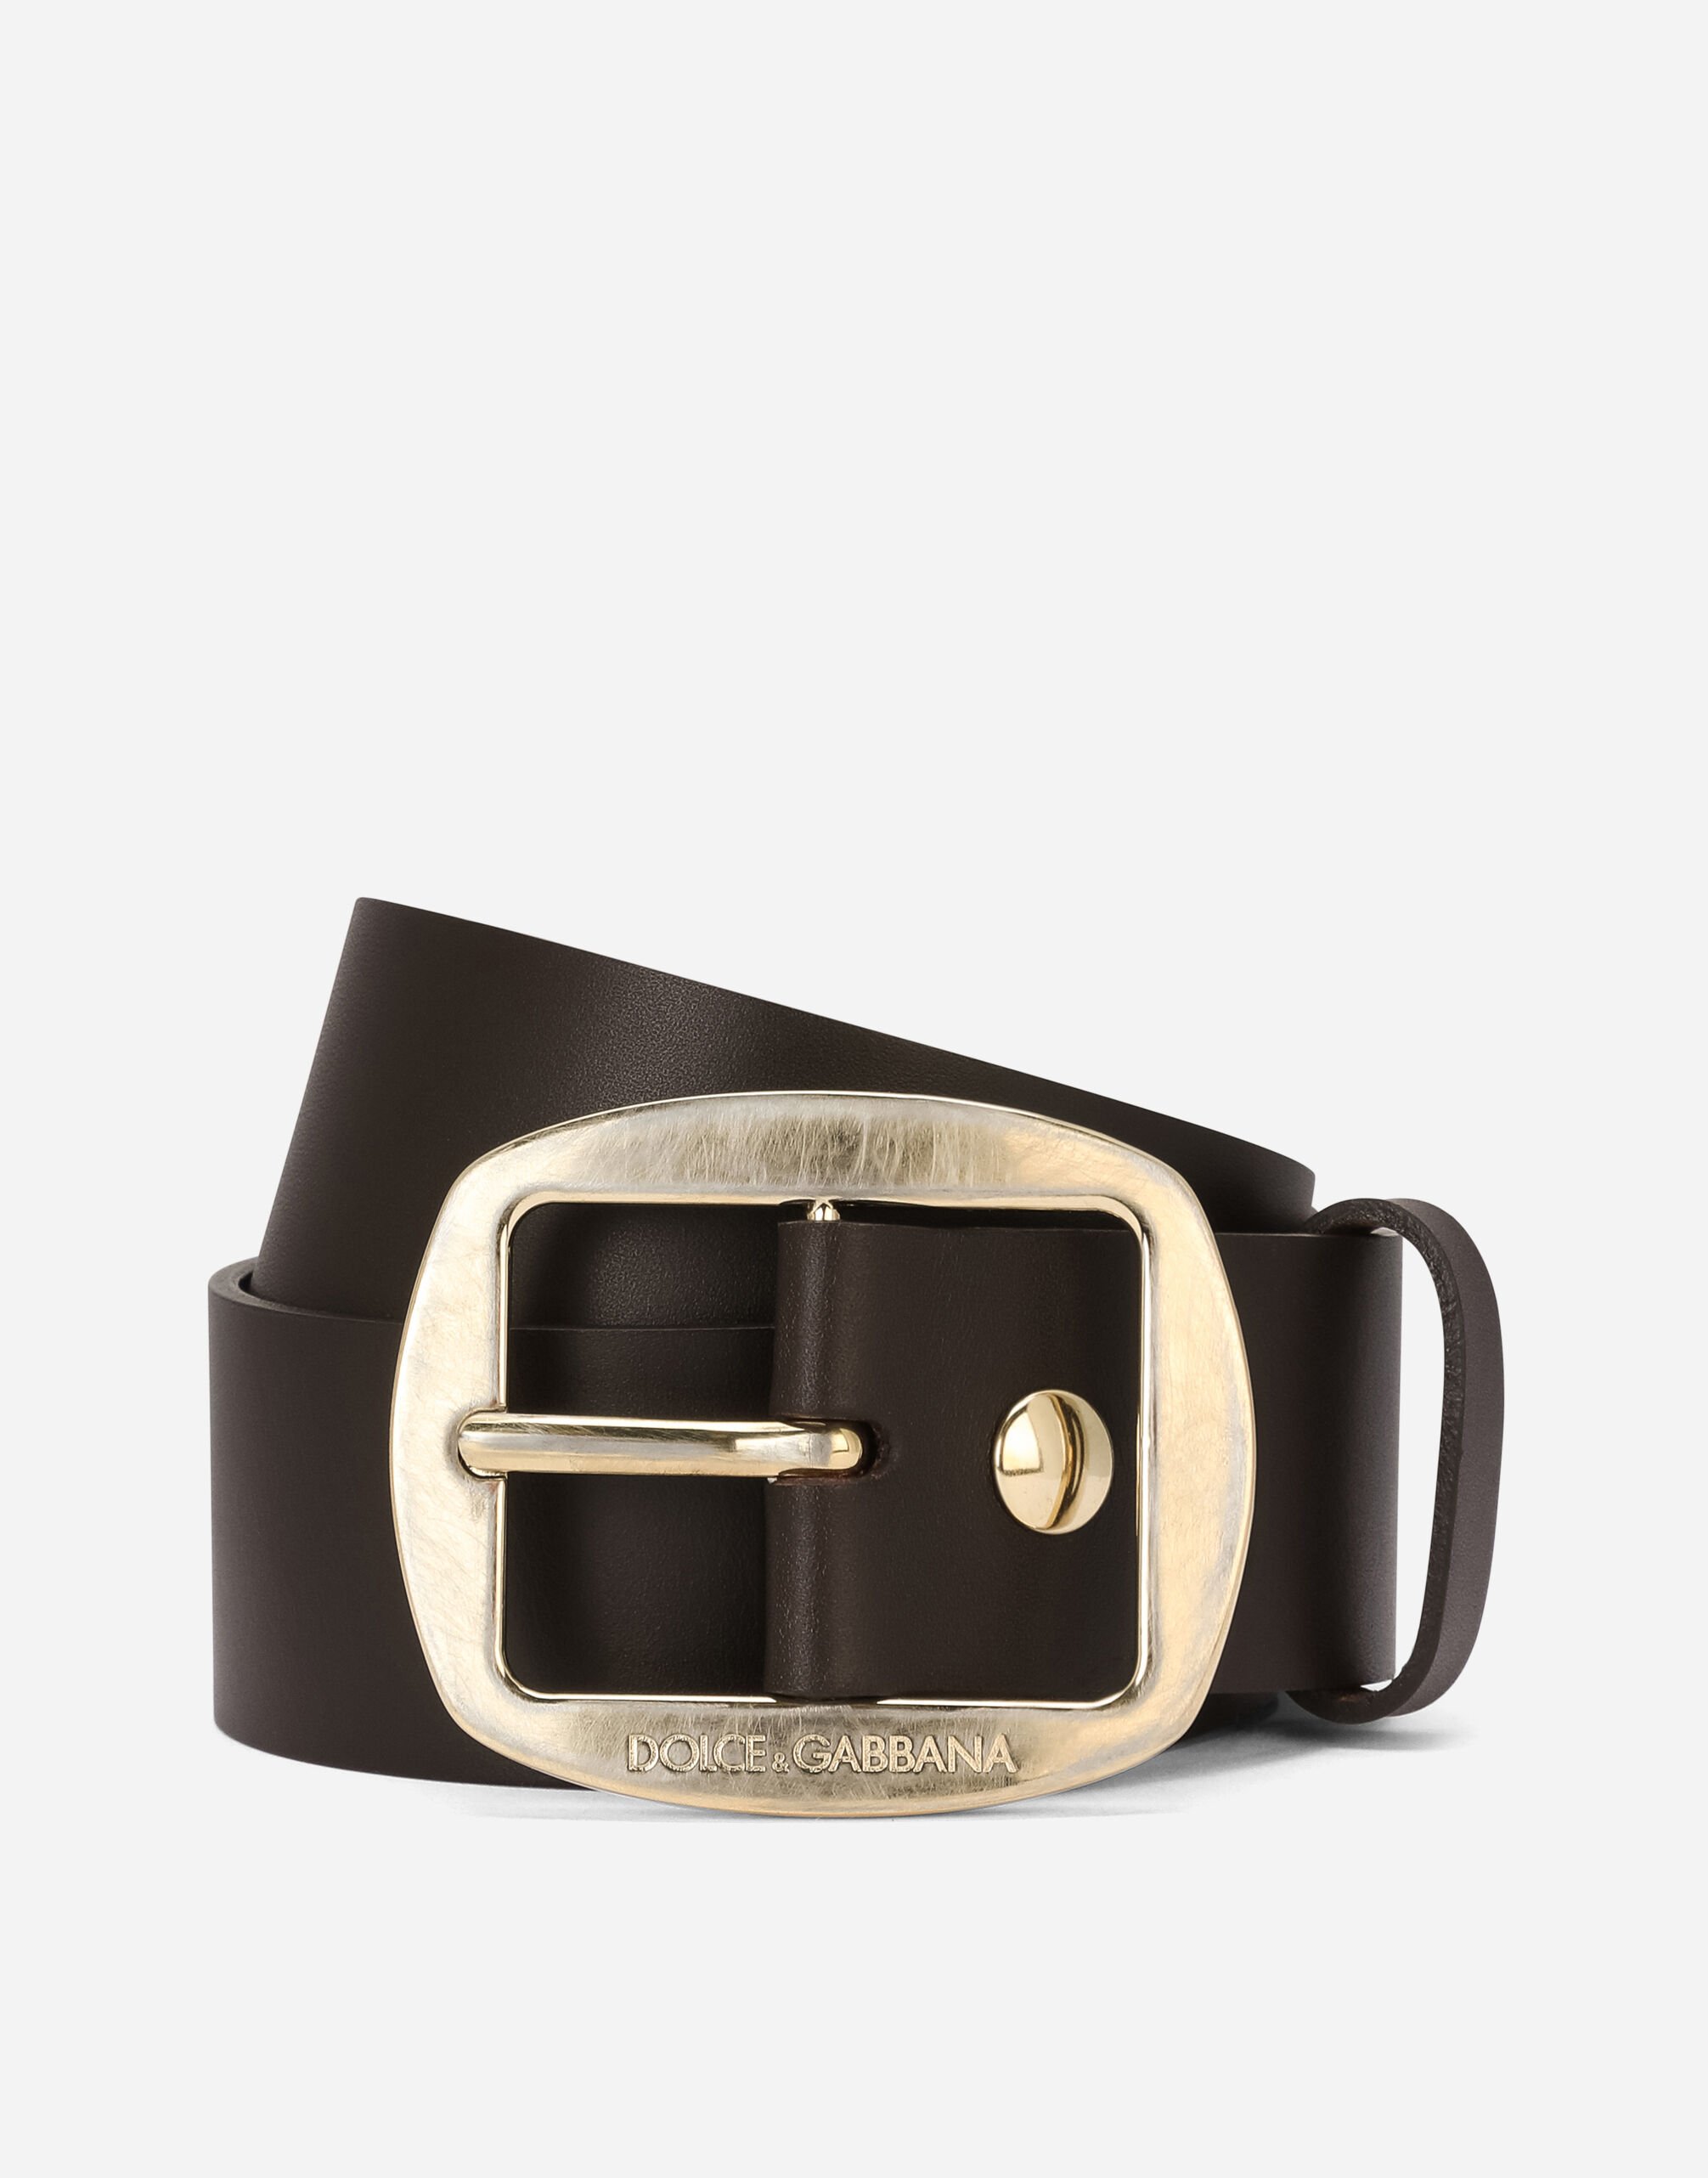 Dolce & Gabbana Cinturón en piel de becerro Plateado WNG101W0001